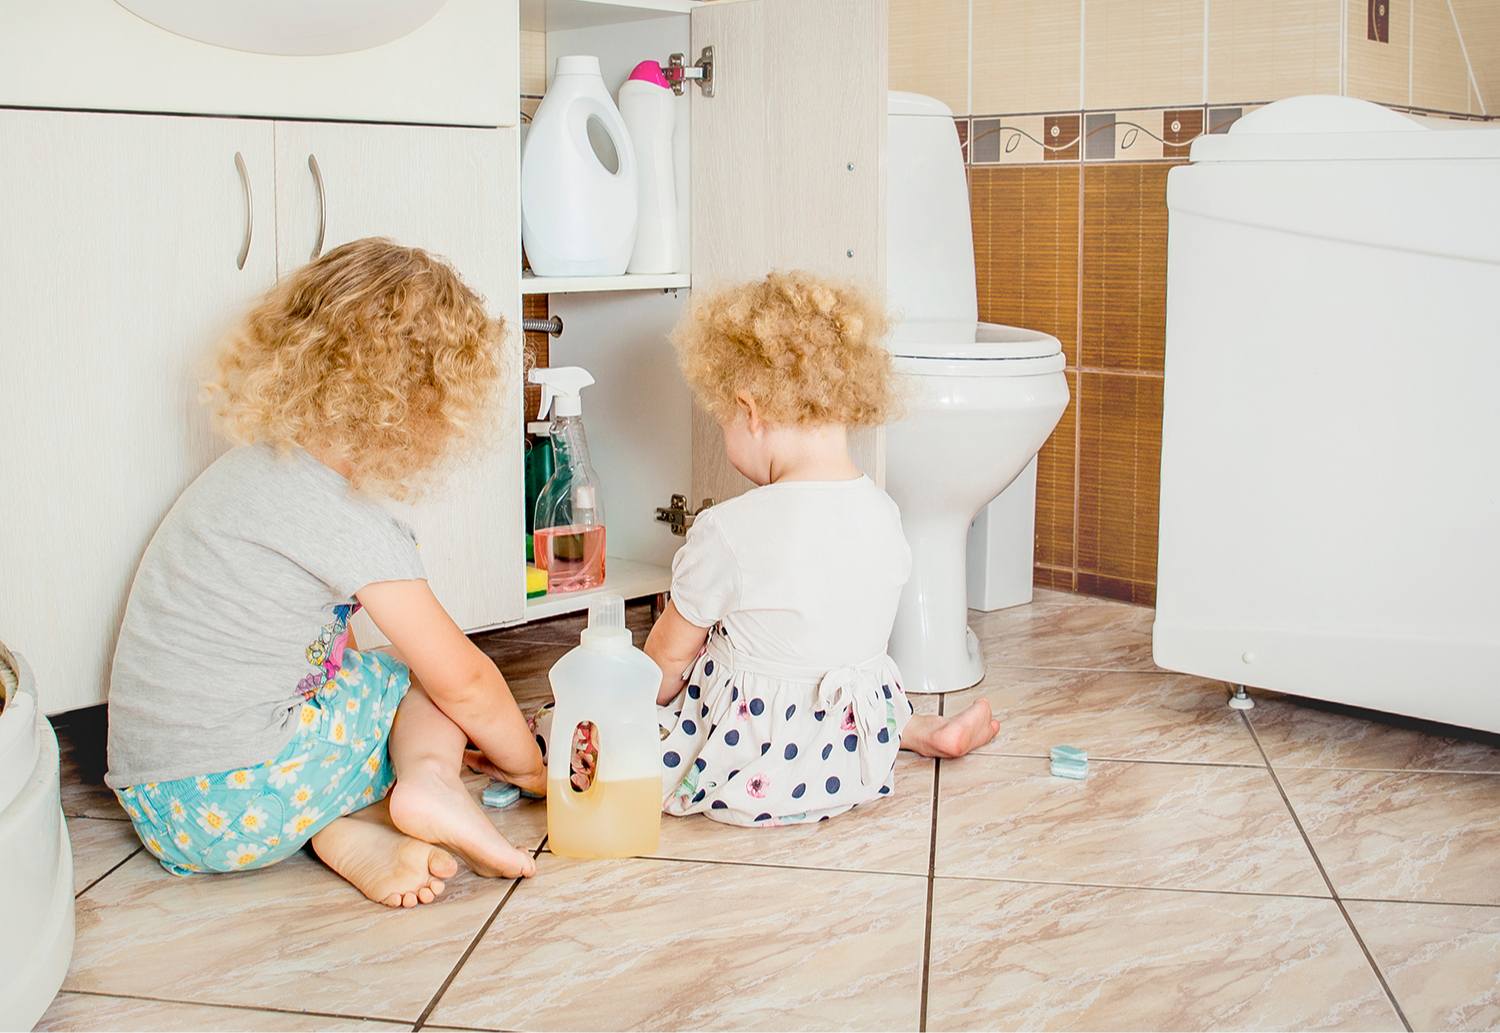 Как обезопасить ванную комнату для ребенка: 5 простых советов